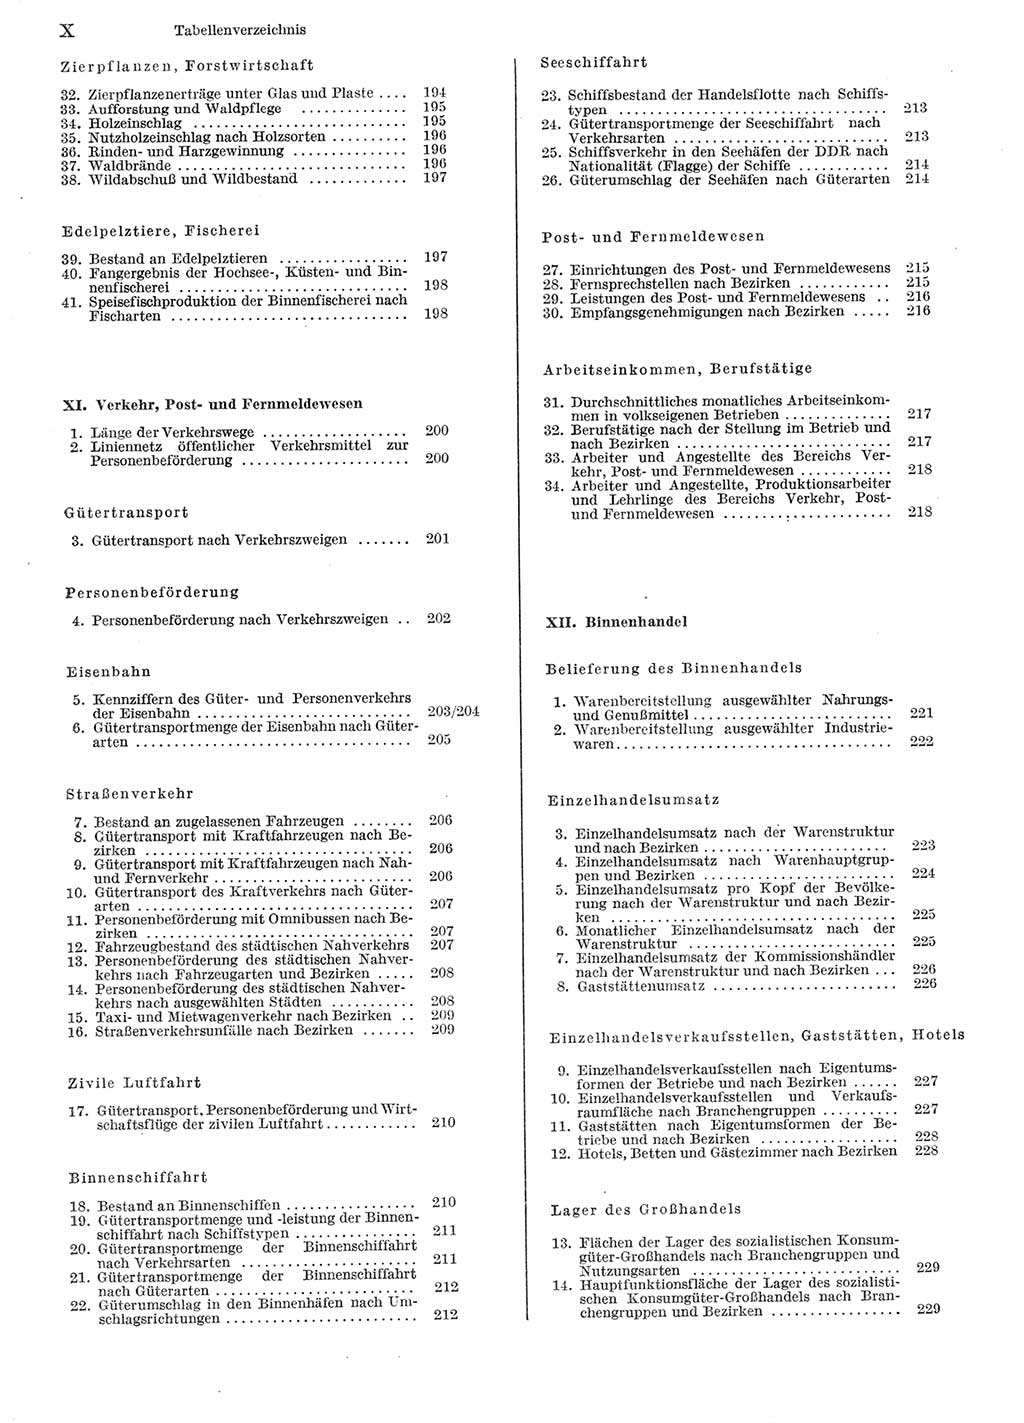 Statistisches Jahrbuch der Deutschen Demokratischen Republik (DDR) 1981, Seite 10 (Stat. Jb. DDR 1981, S. 10)